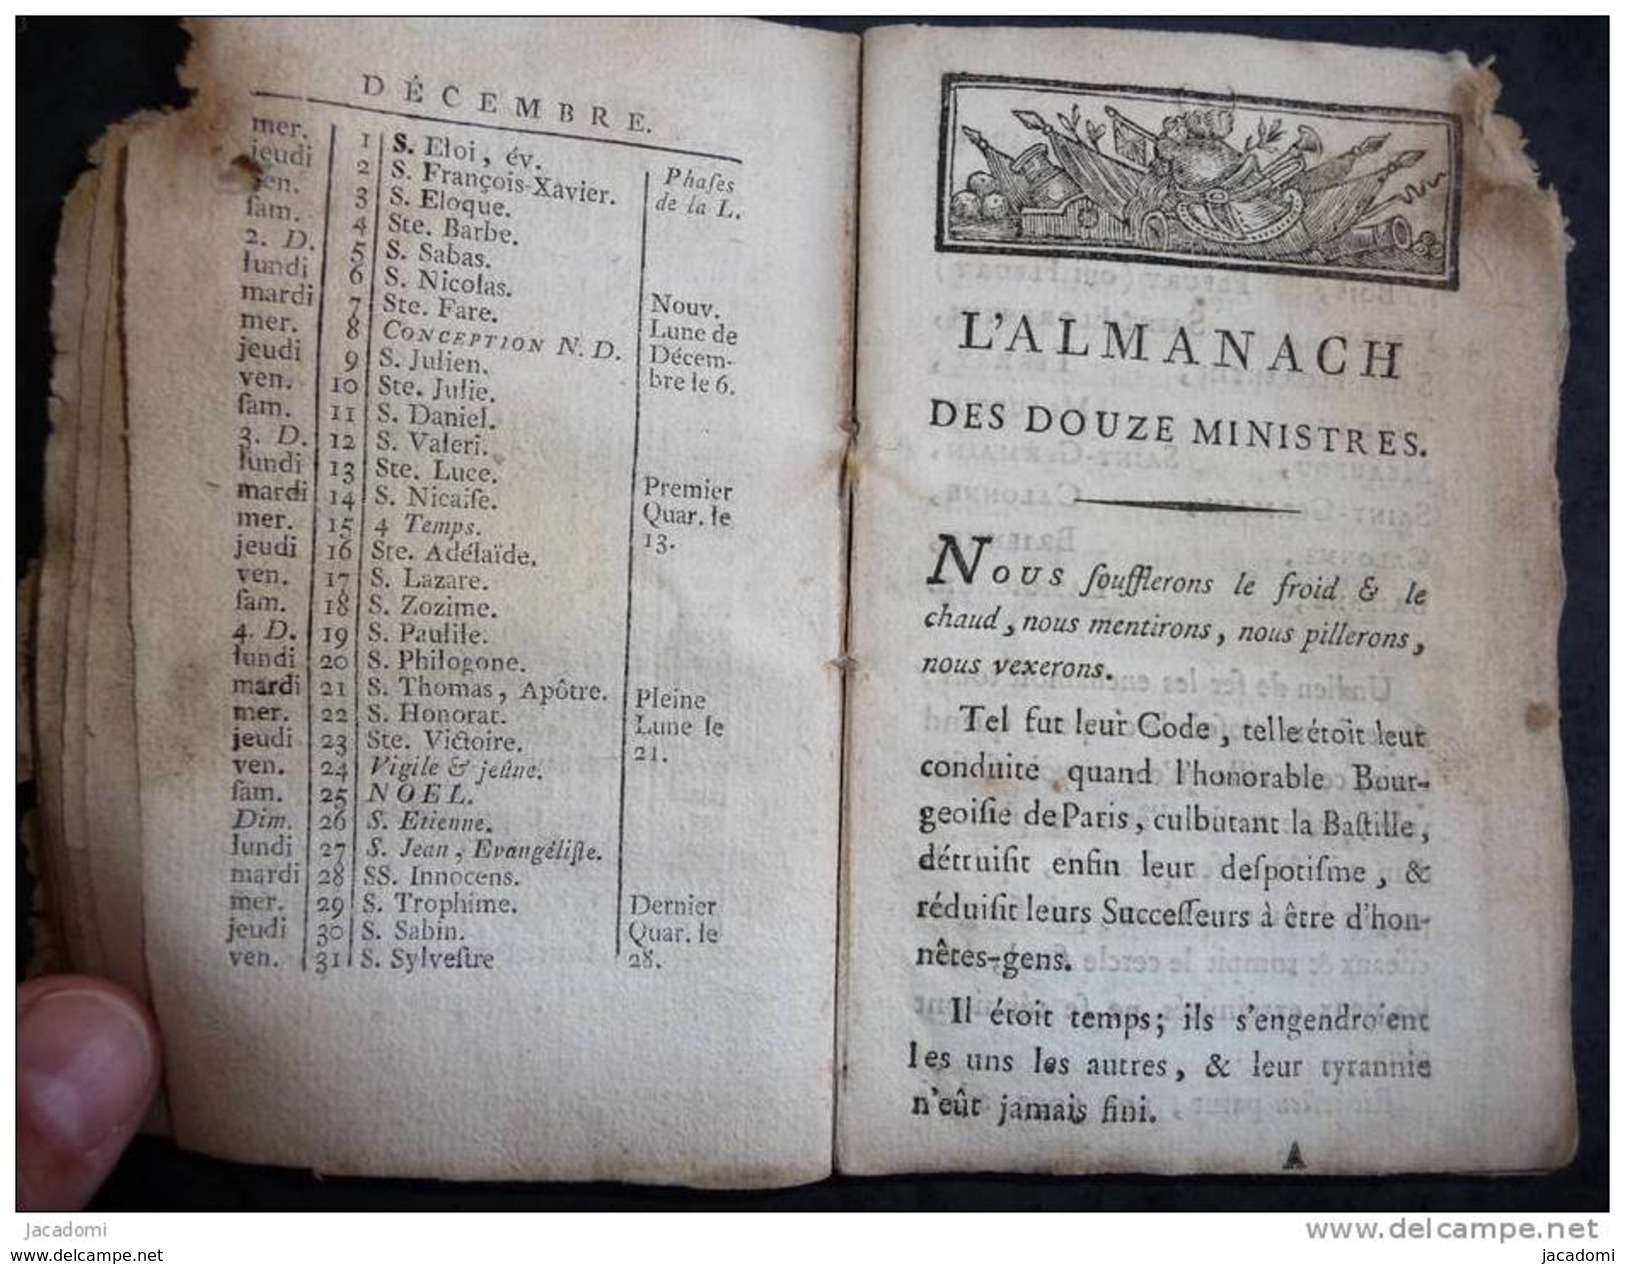 Almanach Des Douze Ministres, De 1790 (A Paris, Rue Saint André-des-Arts, Hôtel Châteauvieux, 9 Scans) - (501) - 1701-1800